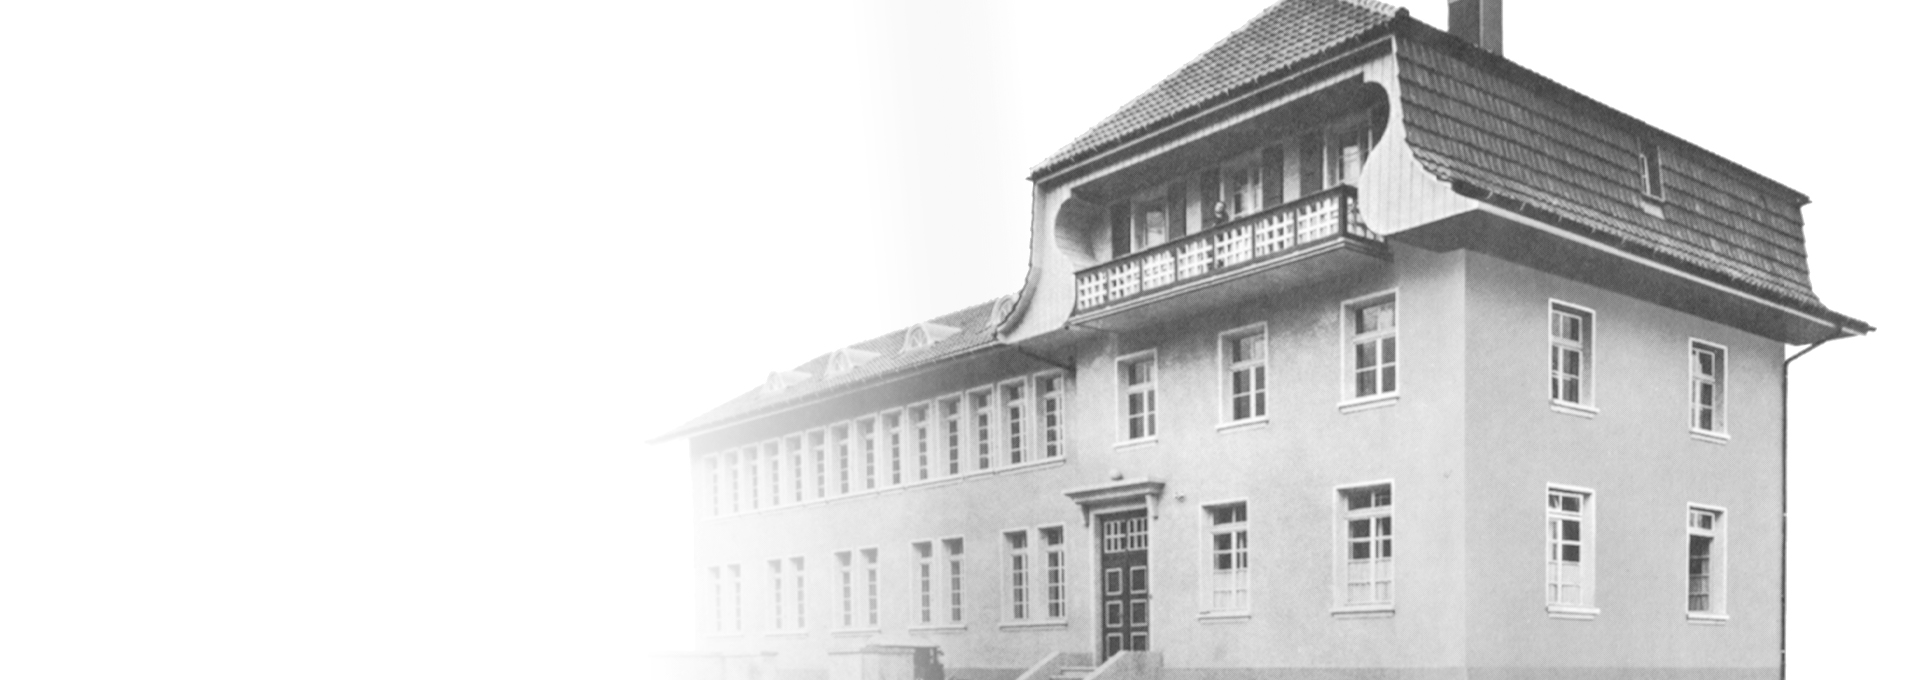 Старая черно-белая фотография первой фабрики Bernafon во Фламатте, недалеко от Берна, Швейцария, 1925 год